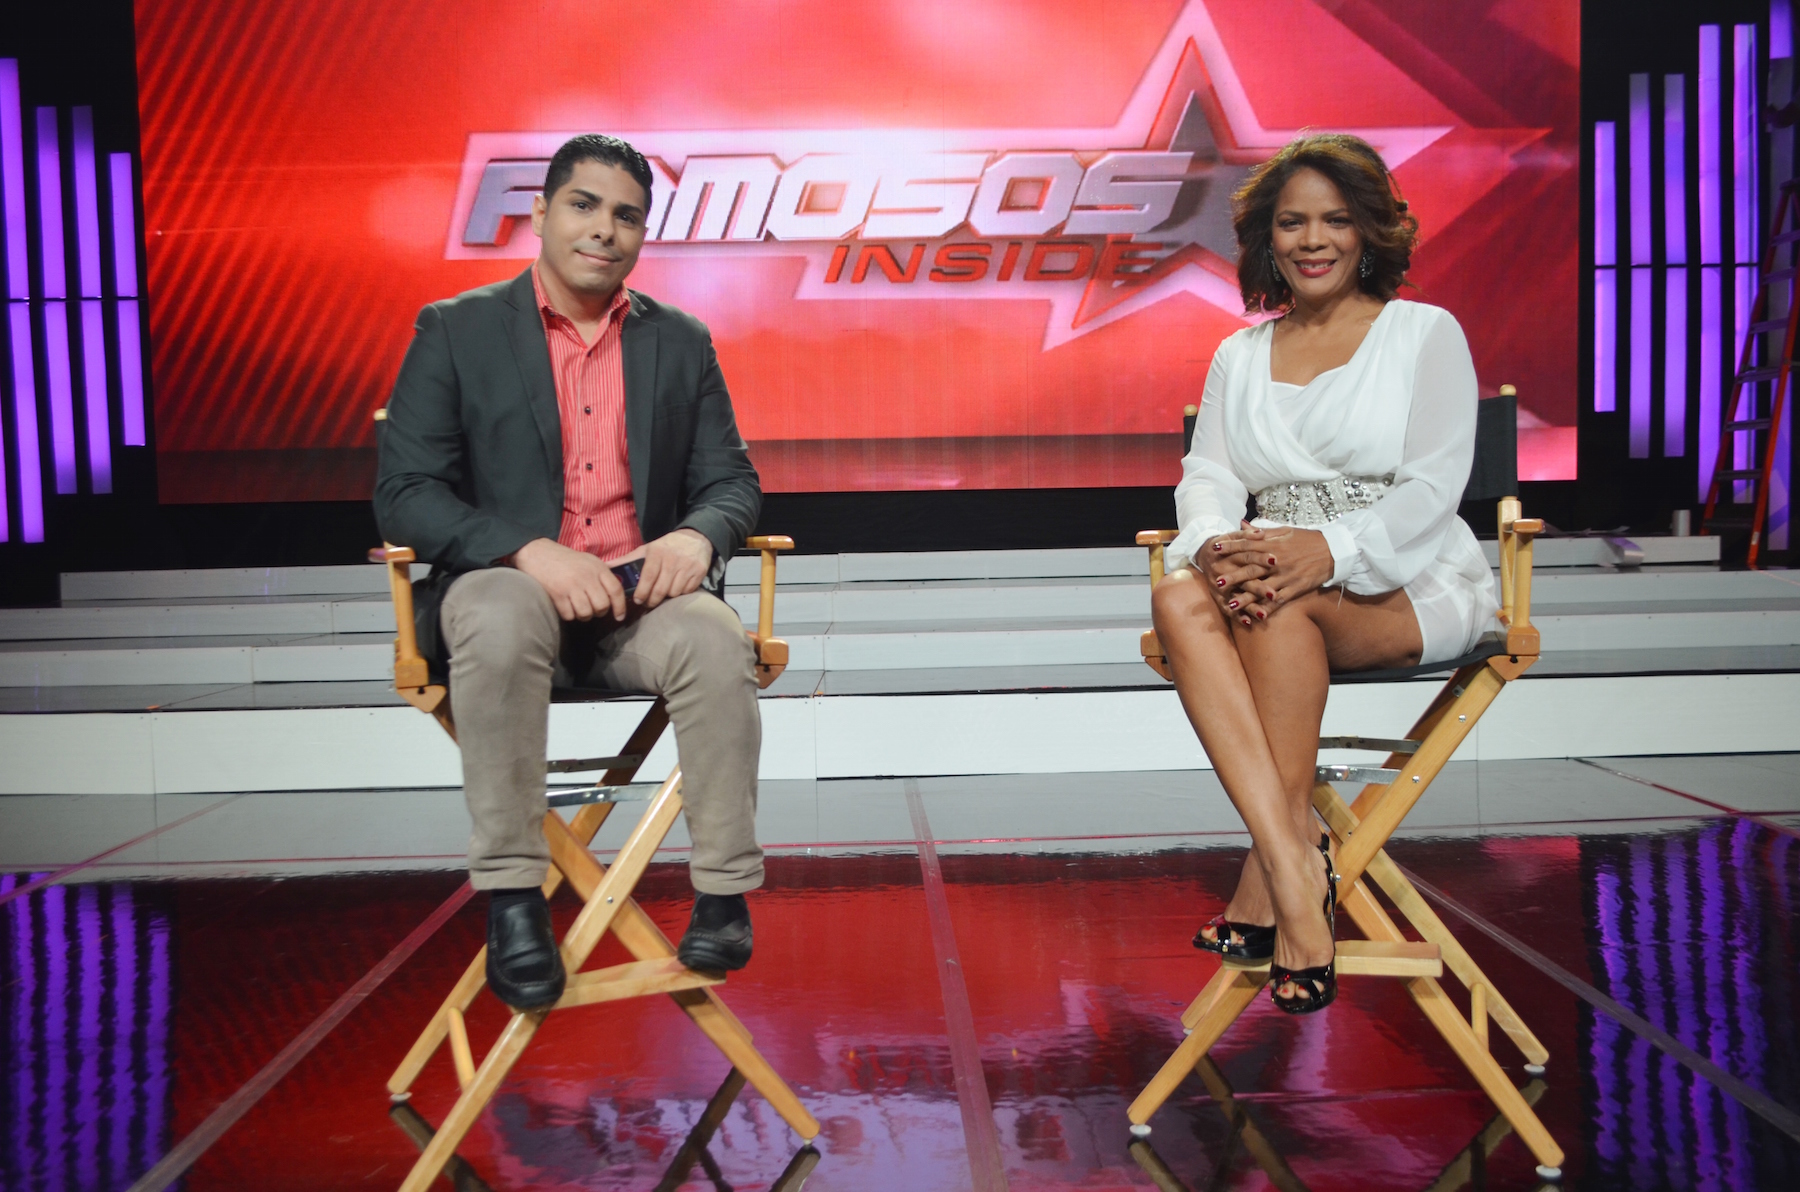 Samir Saba y Marivell Contreras, presentadores de "Famosos Inside", de CDN 37, también pasaron por el set de Imaginativa.